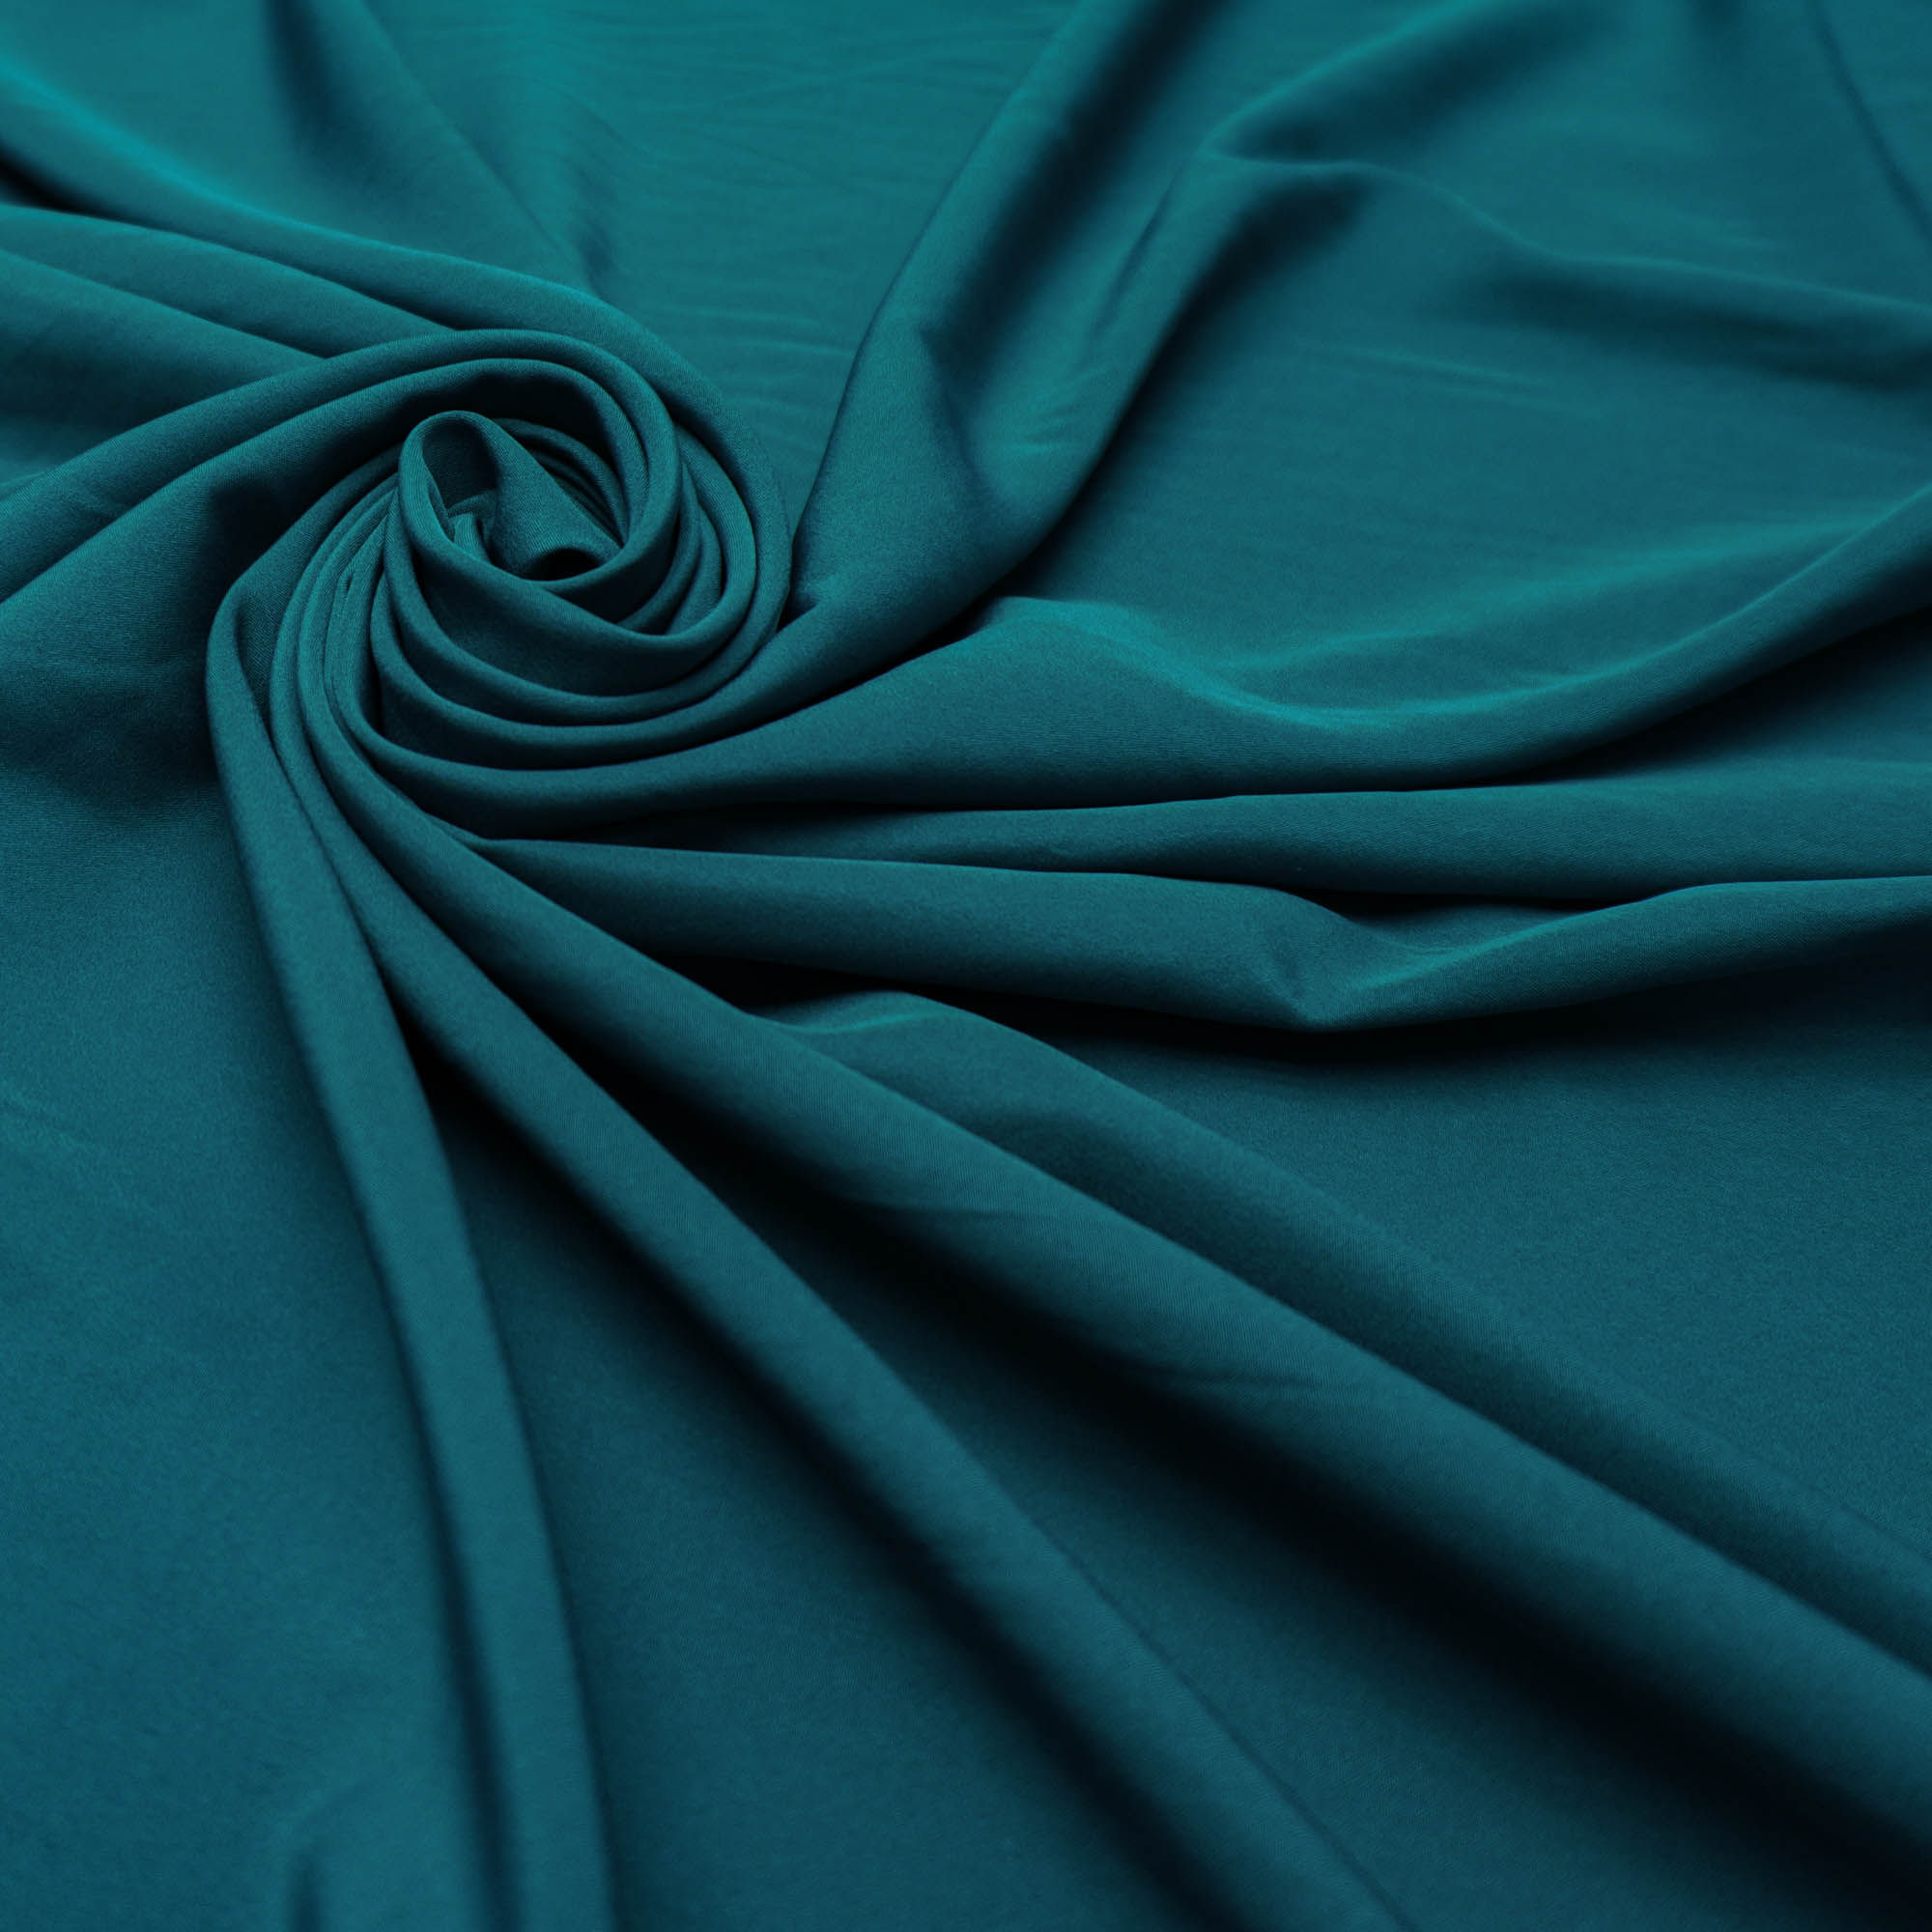 Tecido forro 100% poliester para tecido leve verde turquesa